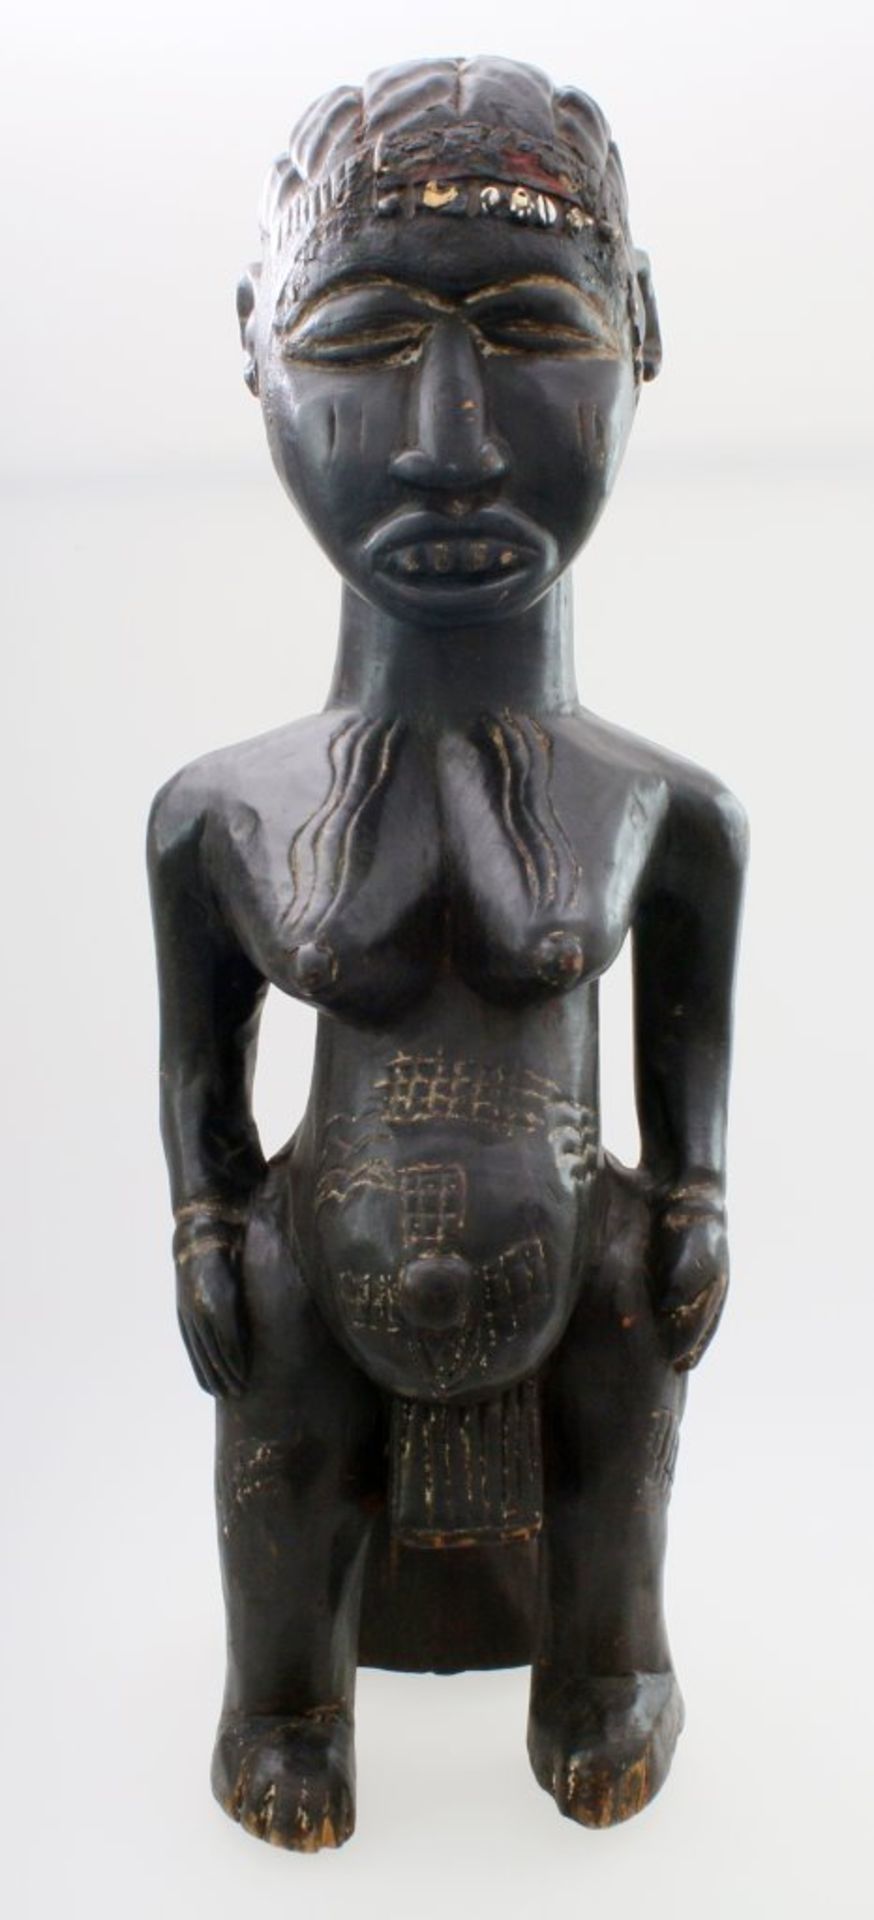 Westafrika - Große Ahnenfigur Schwarz / braun gefärbtes Tropenholz. Auf Stütze sitzende Figur,